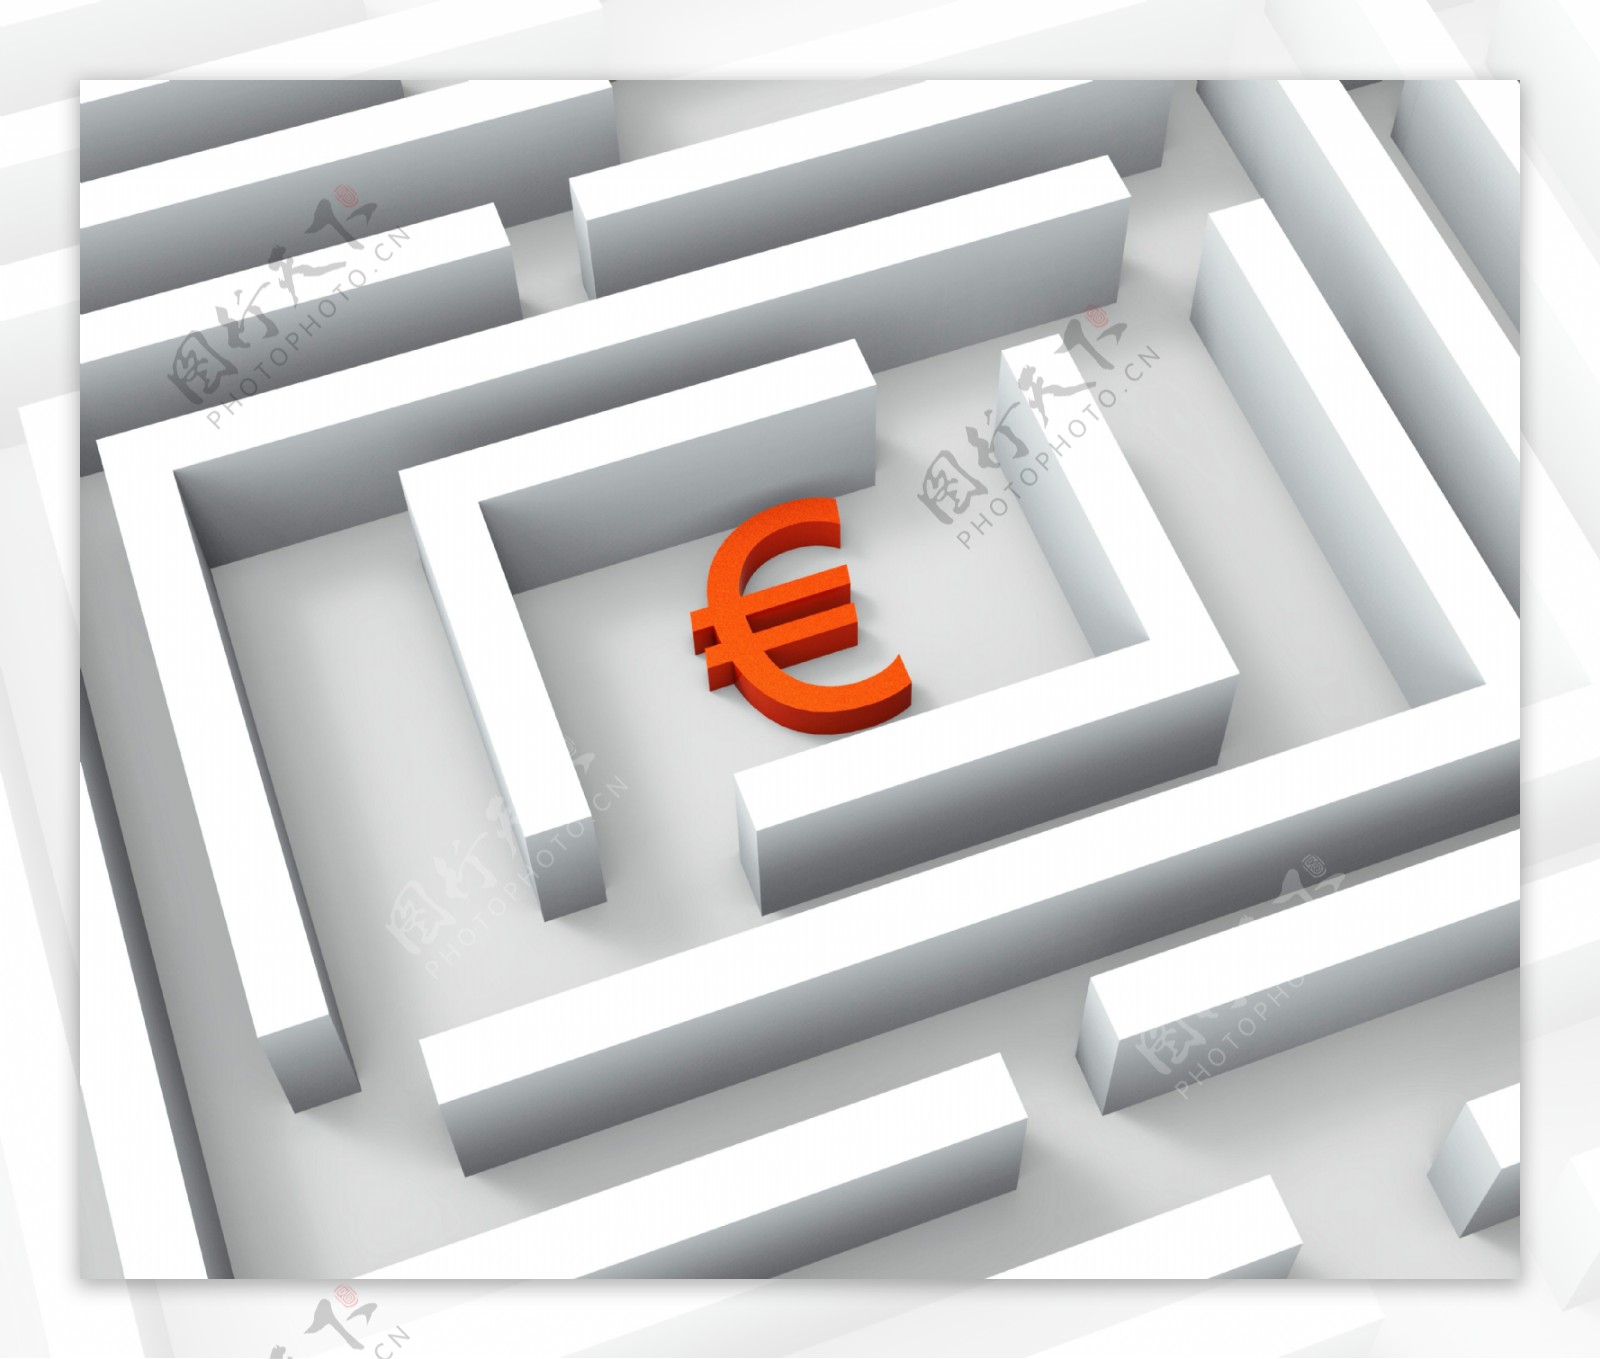 在迷宫的迹象显示欧元欧元信贷